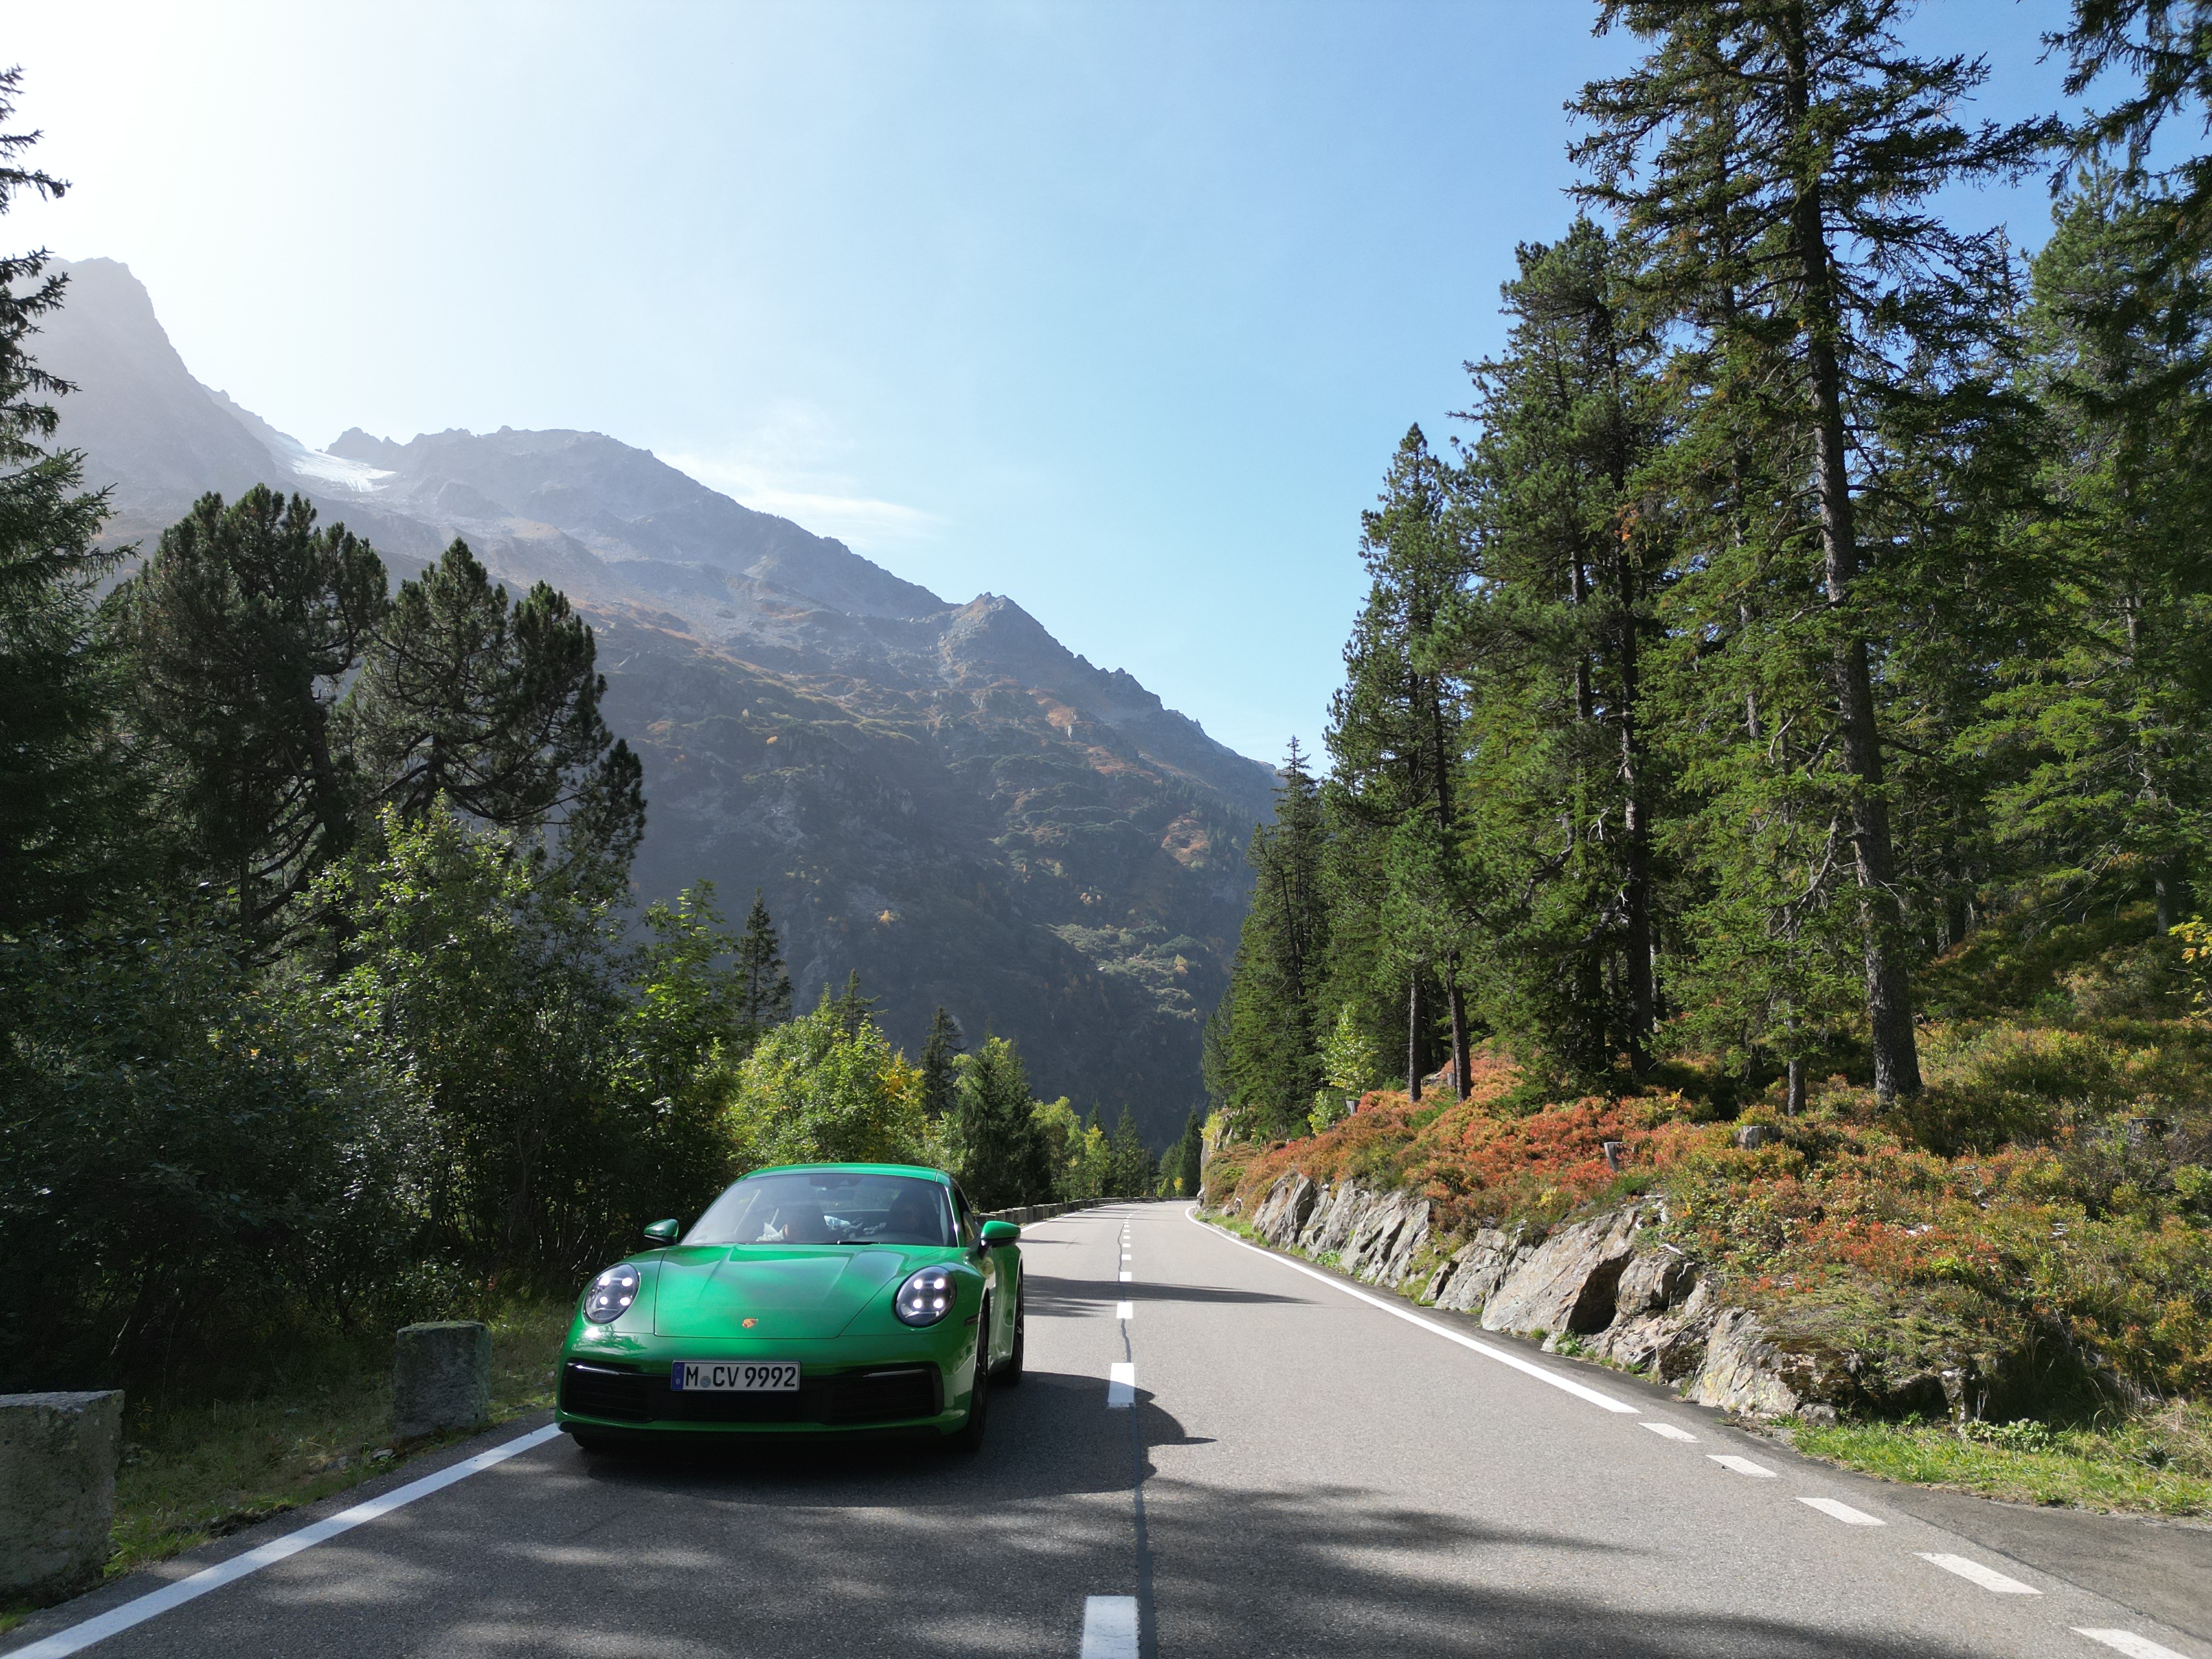 Porsche Grand Tour of the Alps